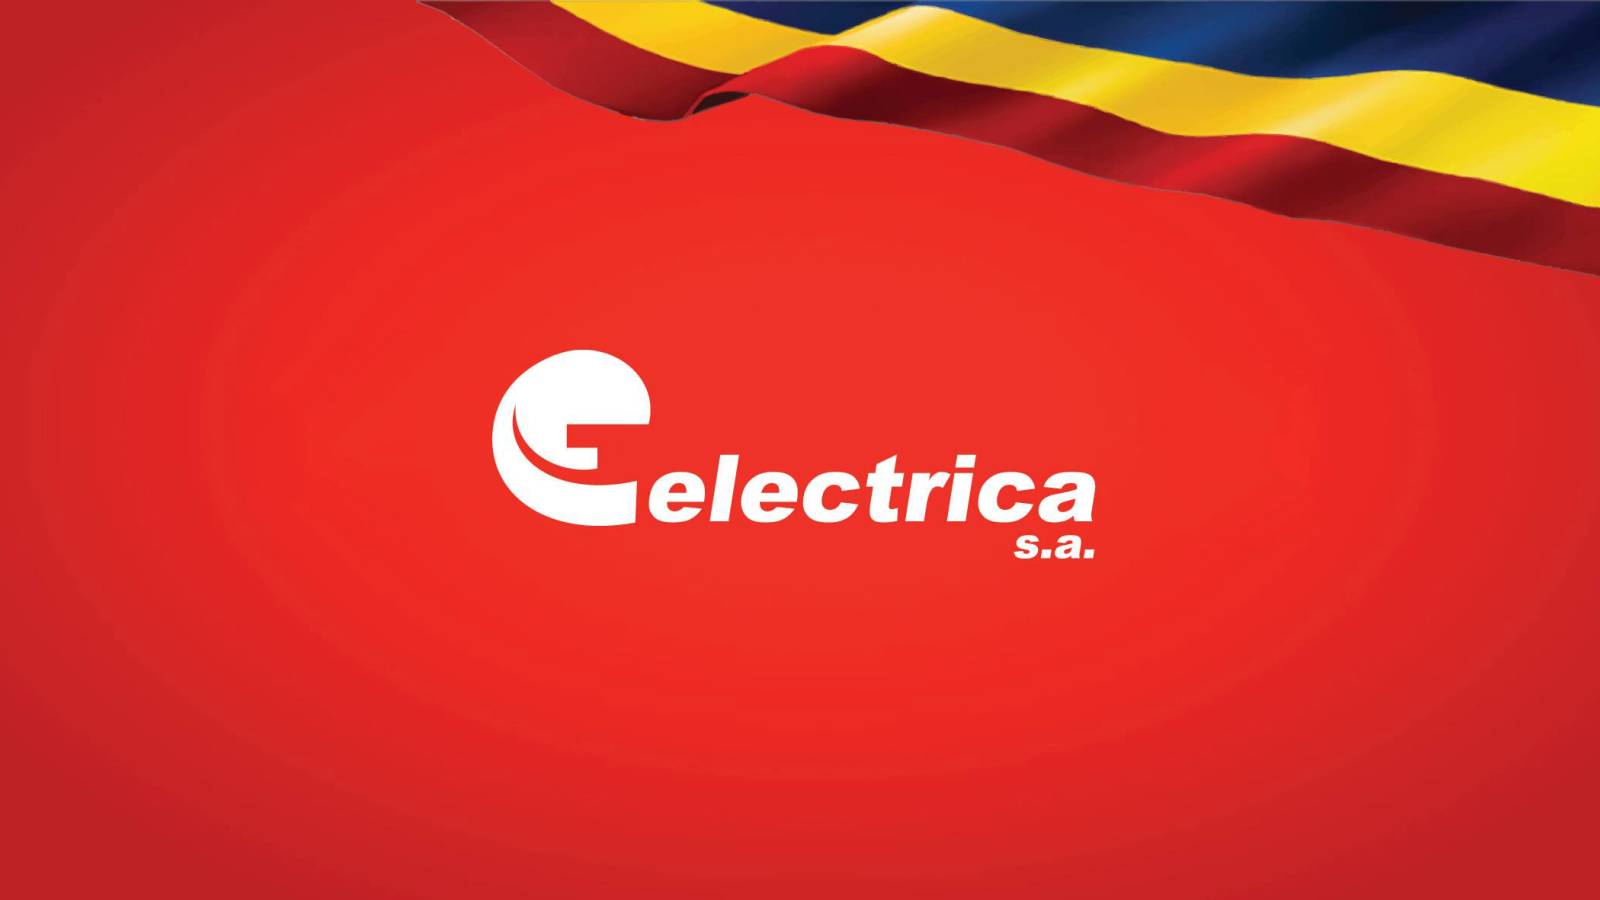 Electrica viralliset toimenpiteet KIELLETTY miljoonilta romanialaisilta kaikkialla maassa